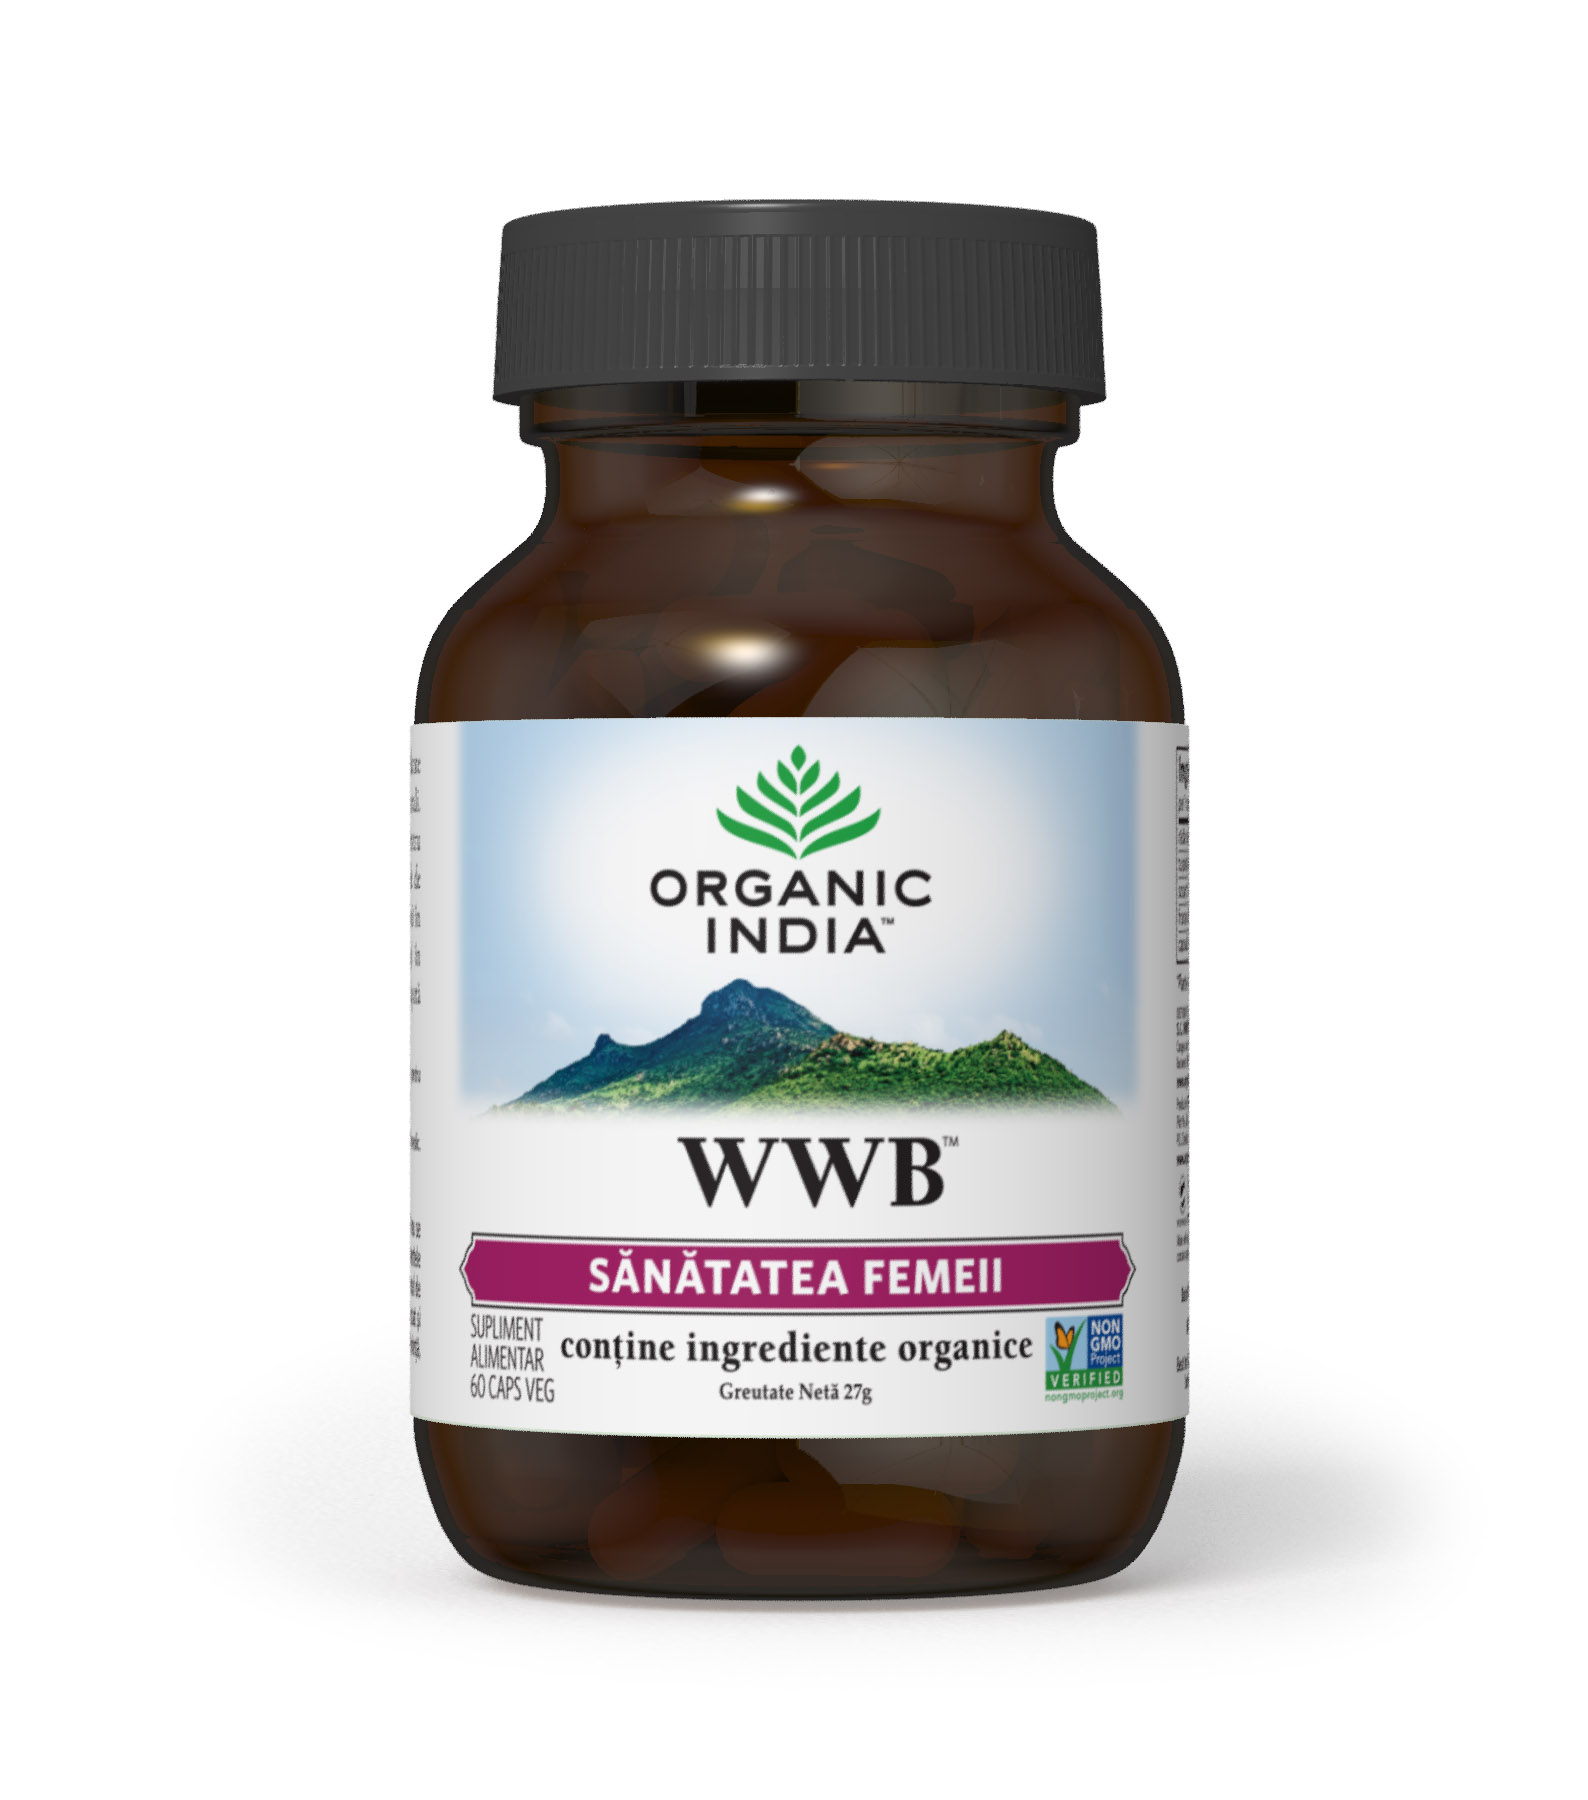 WWB Sanatatea femeii (fara gluten) Organic India – 60 cps driedfruits.ro/ Produse Fara Gluten